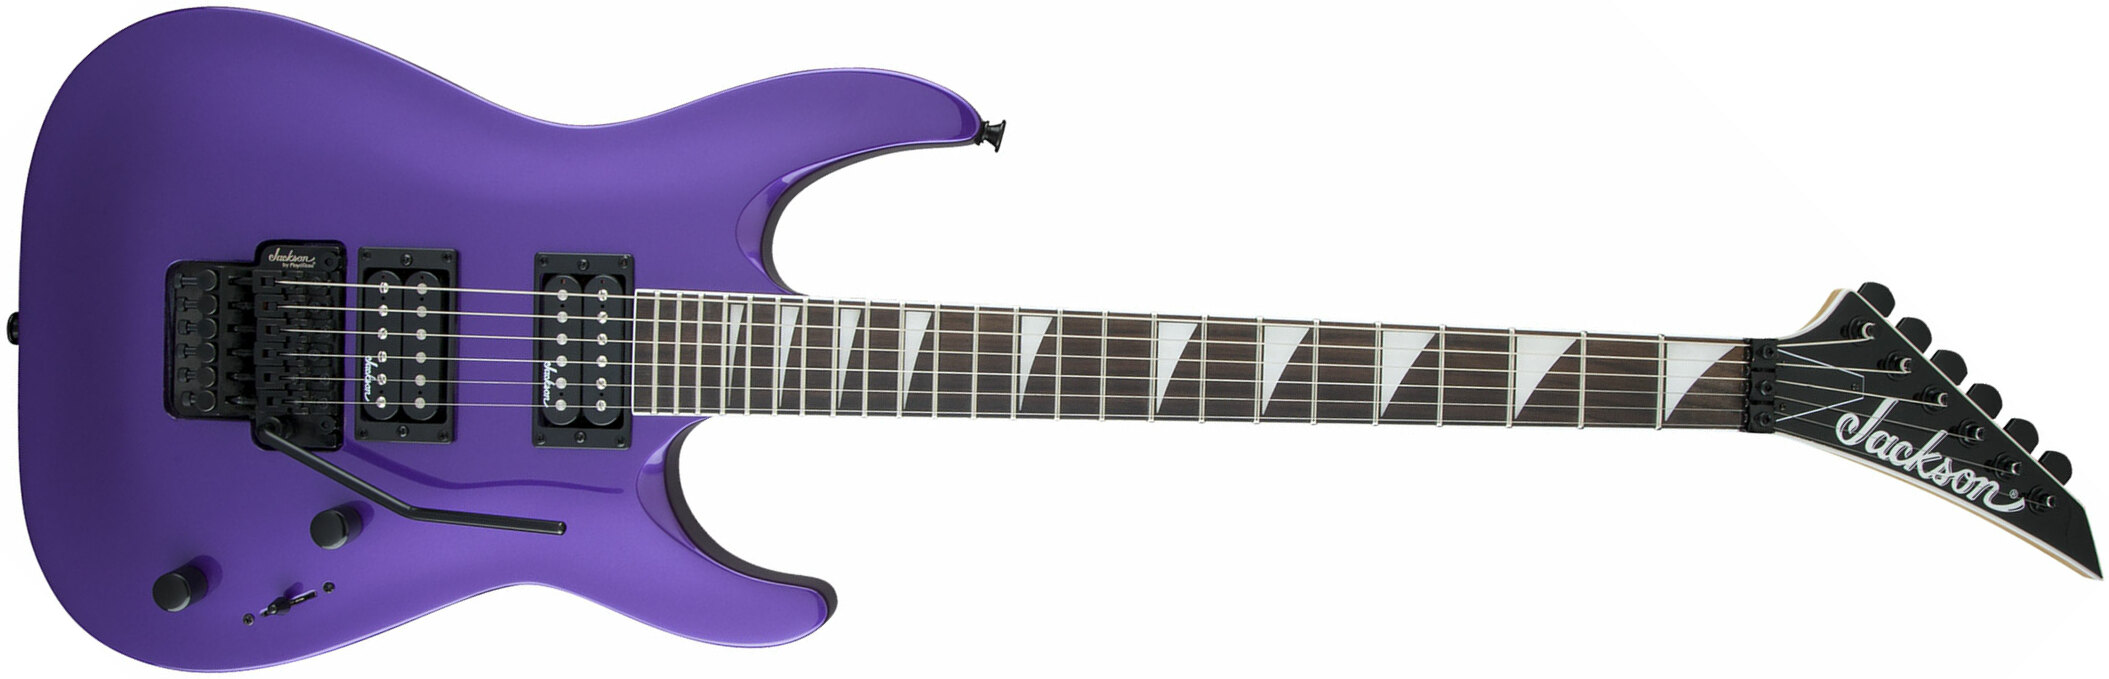 Jackson Dinky Archtop Js32 Dka 2h Fr Ama - Pavo Purple - Guitarra eléctrica de doble corte. - Main picture